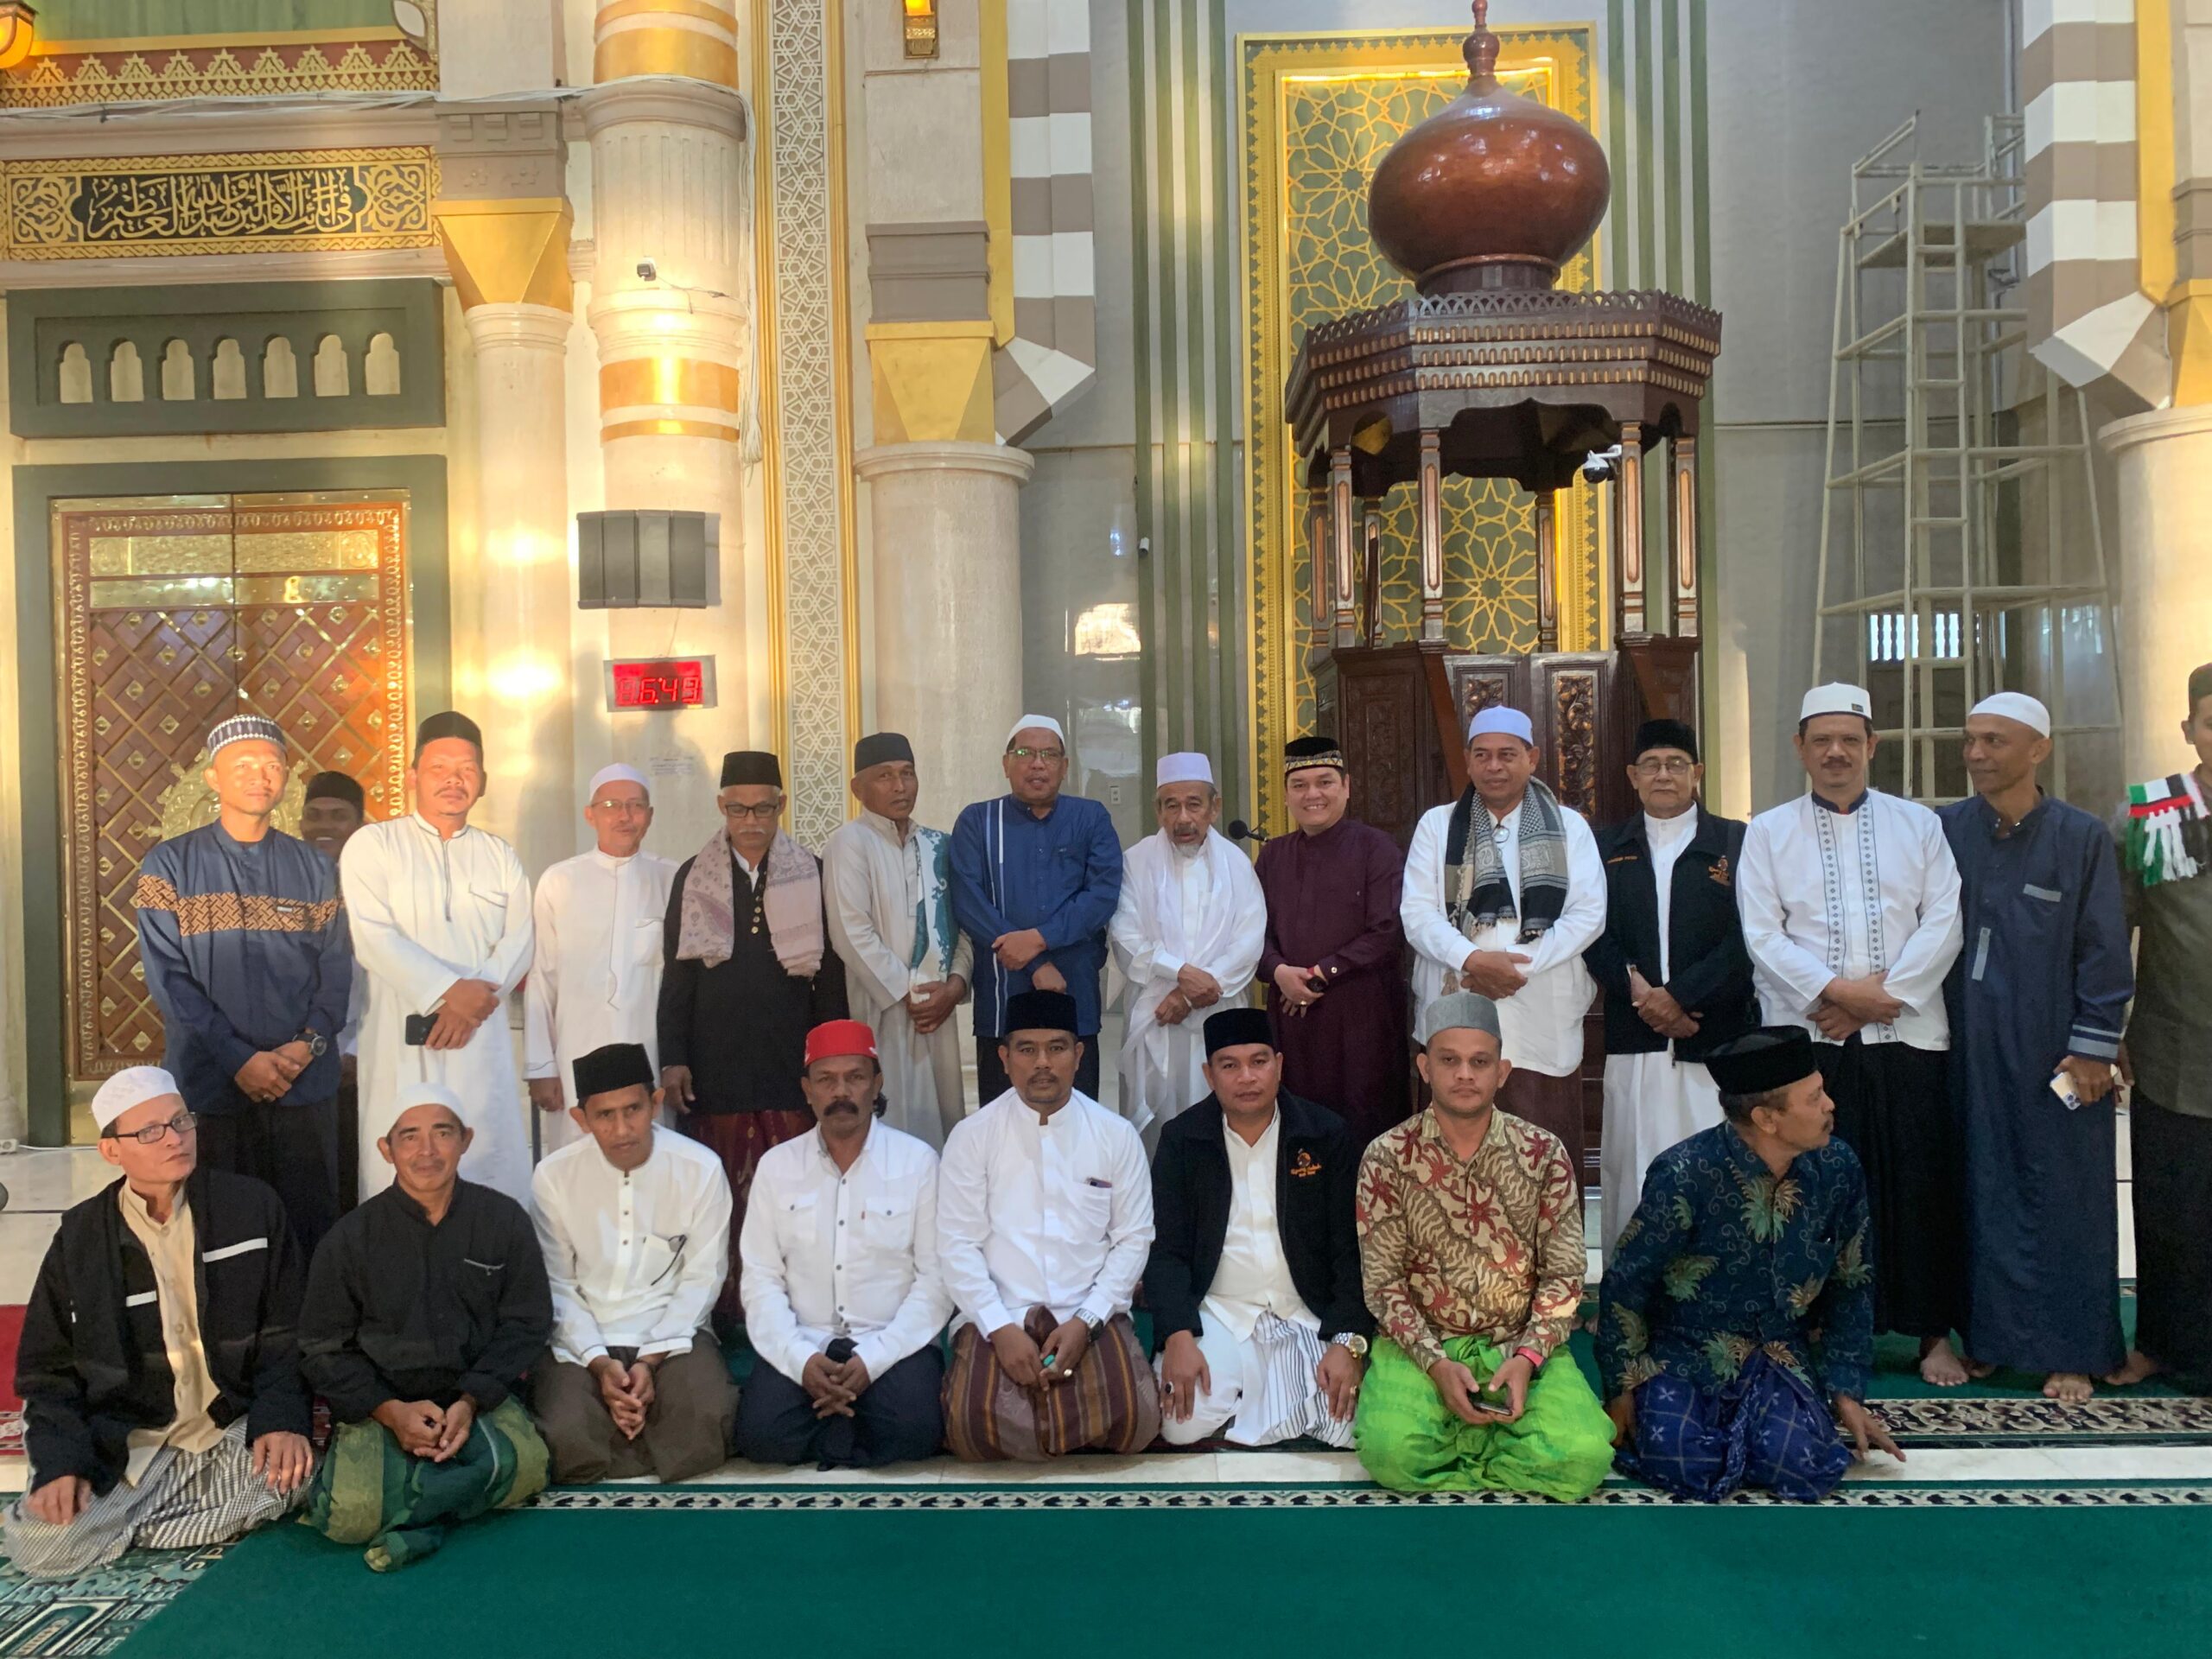 Tengku M.Yunus Yang Akrab Di Sapa Abon Idi Cut Tausiyah/Kultum Dalam Acara Safari Subuh di Mesjid Agung Idi Rayeuk